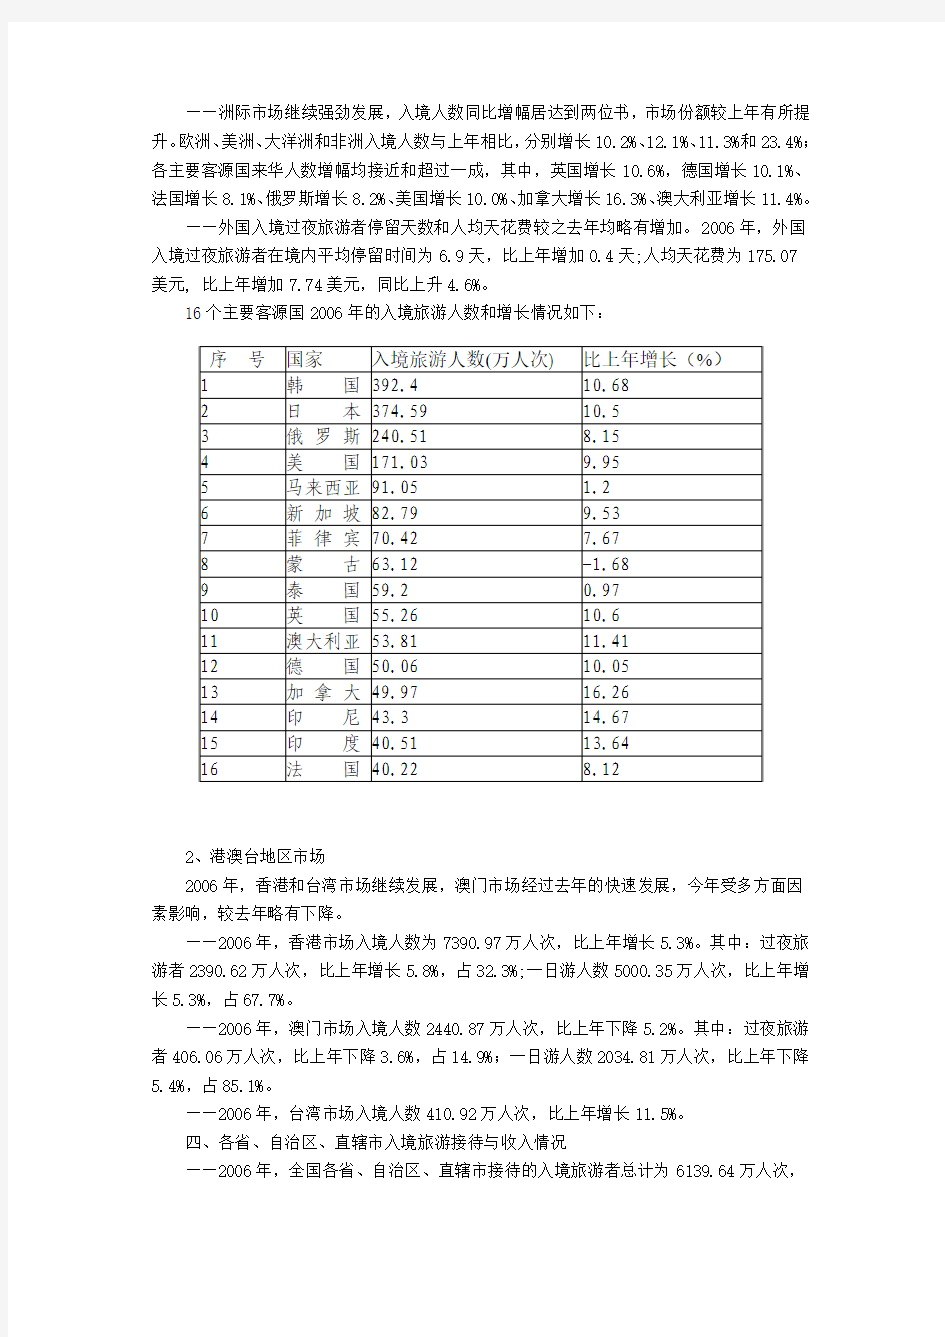 2006年中国旅游业统计公报